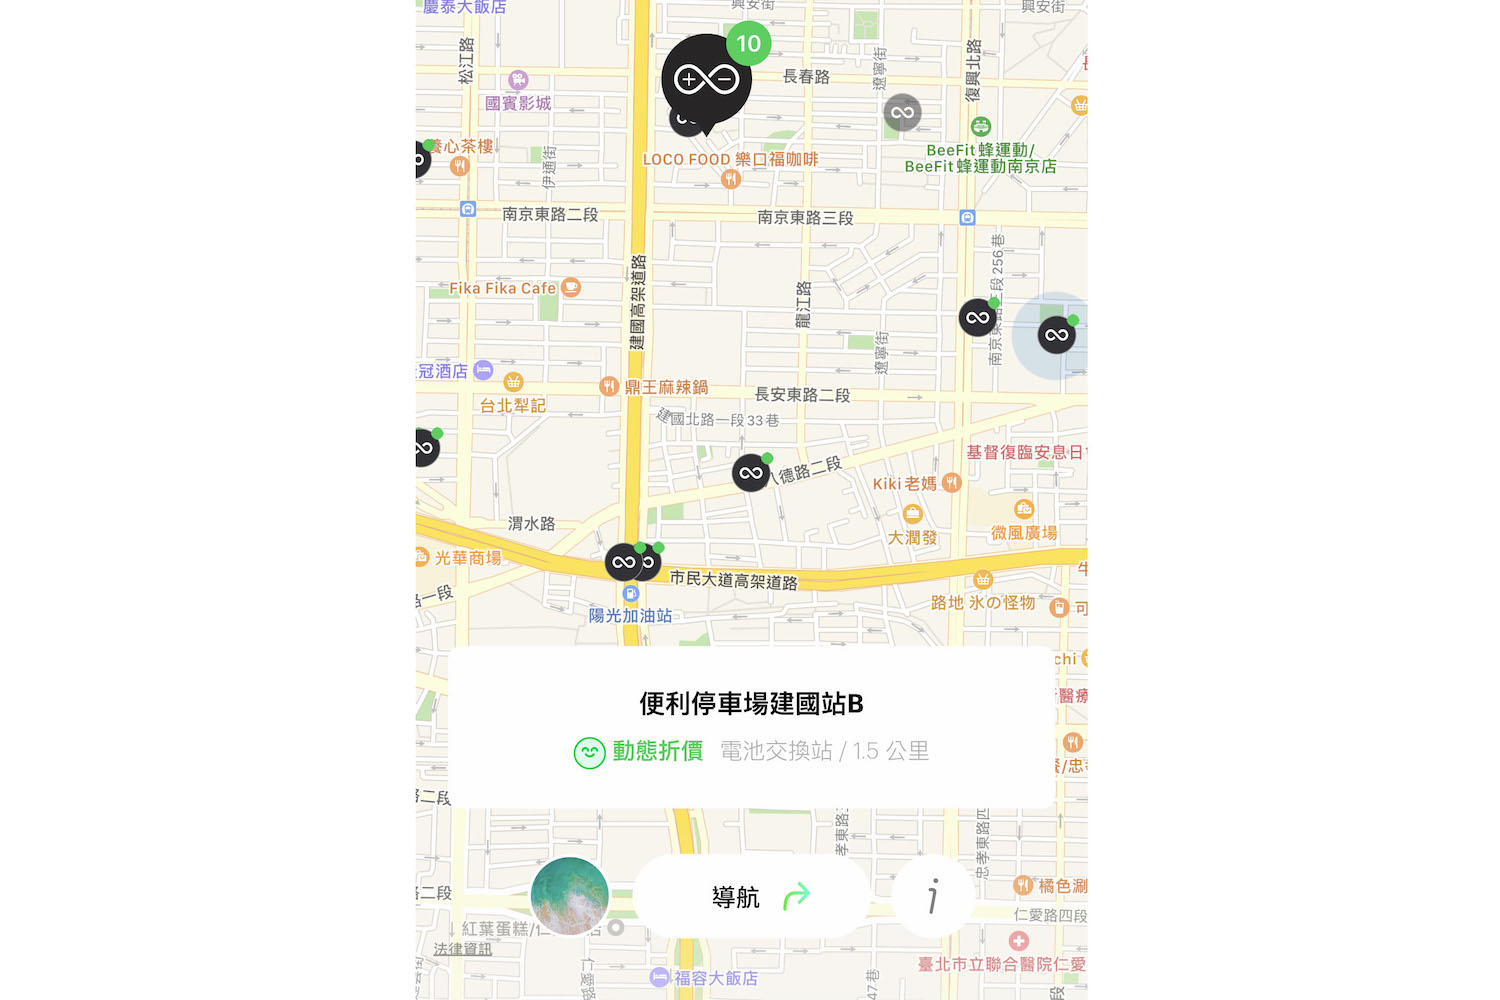 選用「自由省方案」的車主，在 App 地圖上看到的綠色小圓點，一鍵導航至提供「動態折價」的 GoStation 站點，單站單次最高可享 8 折優惠。